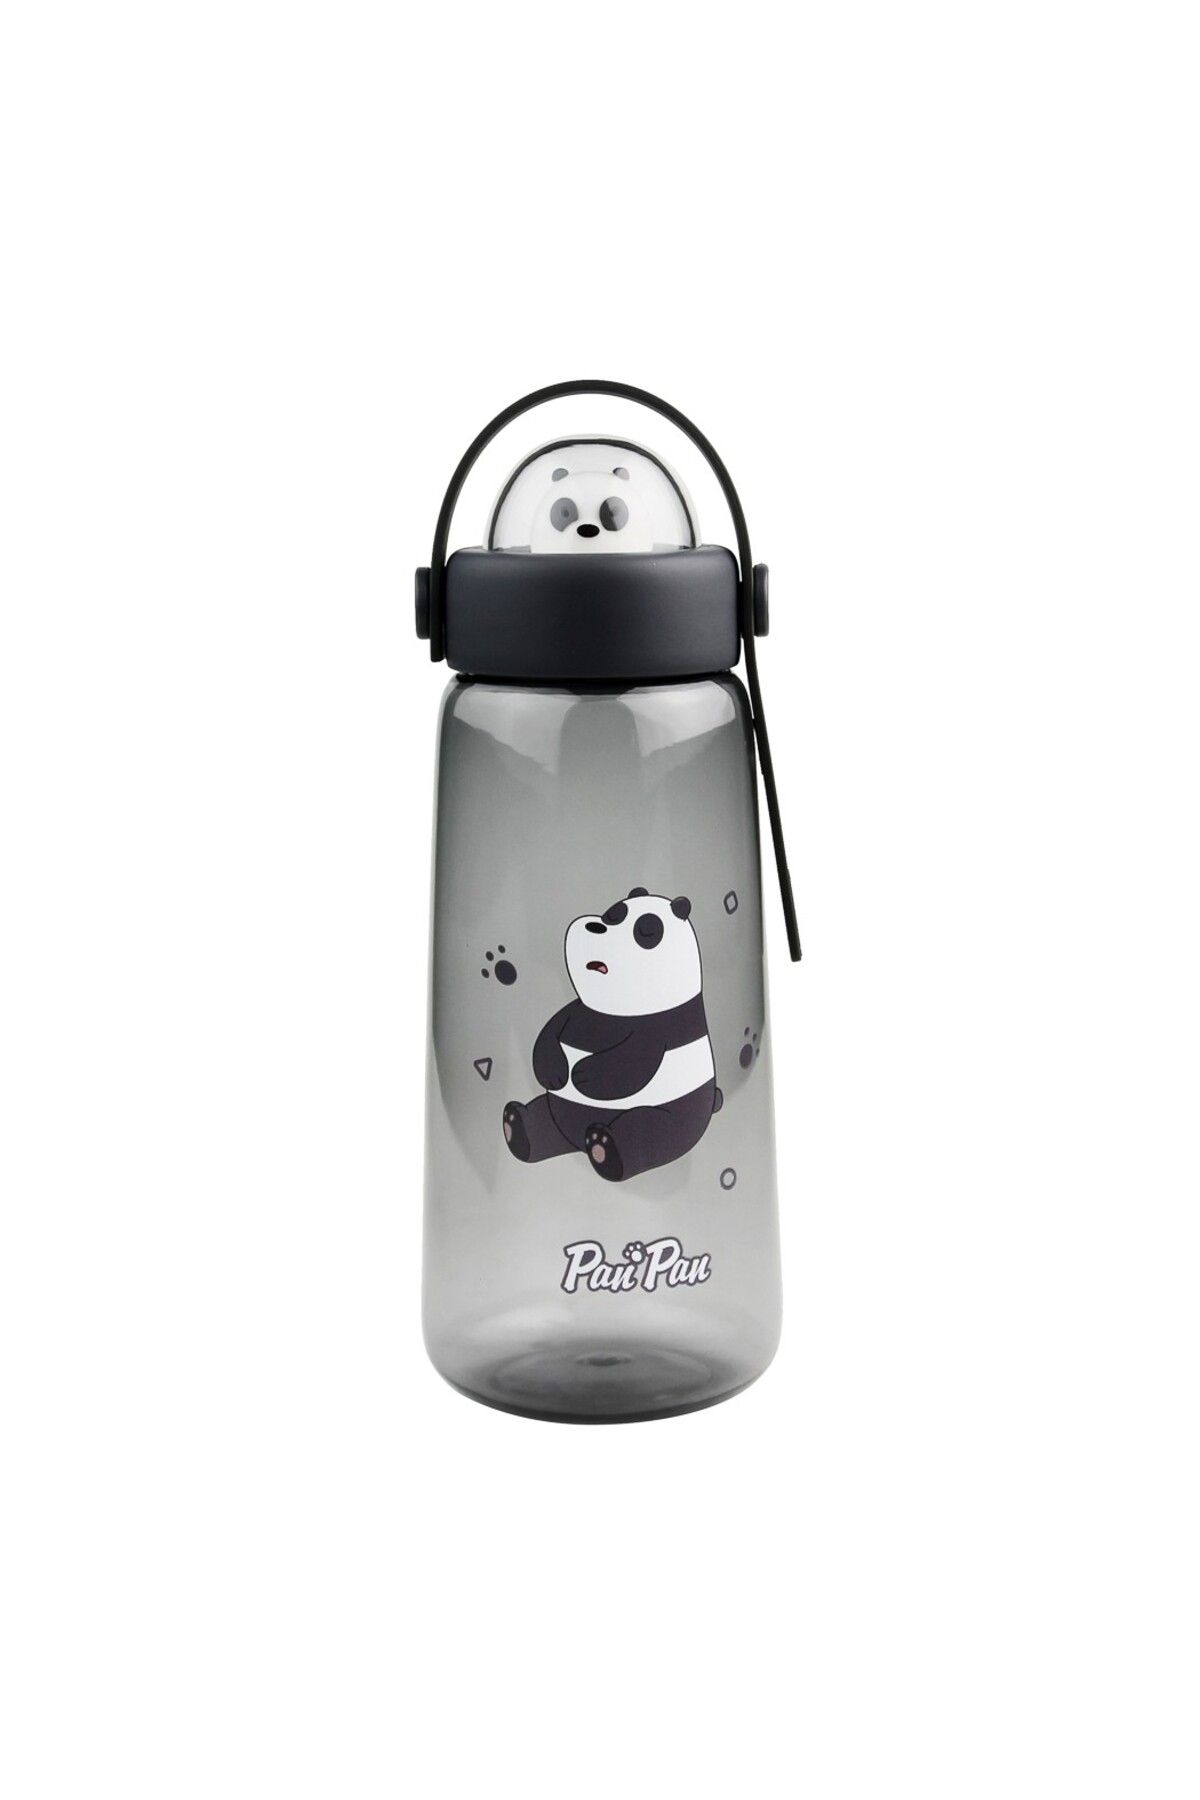 Miniso We Bare Bears Lisanslı Figürlü Plastik Şişe (600ml) - Panda